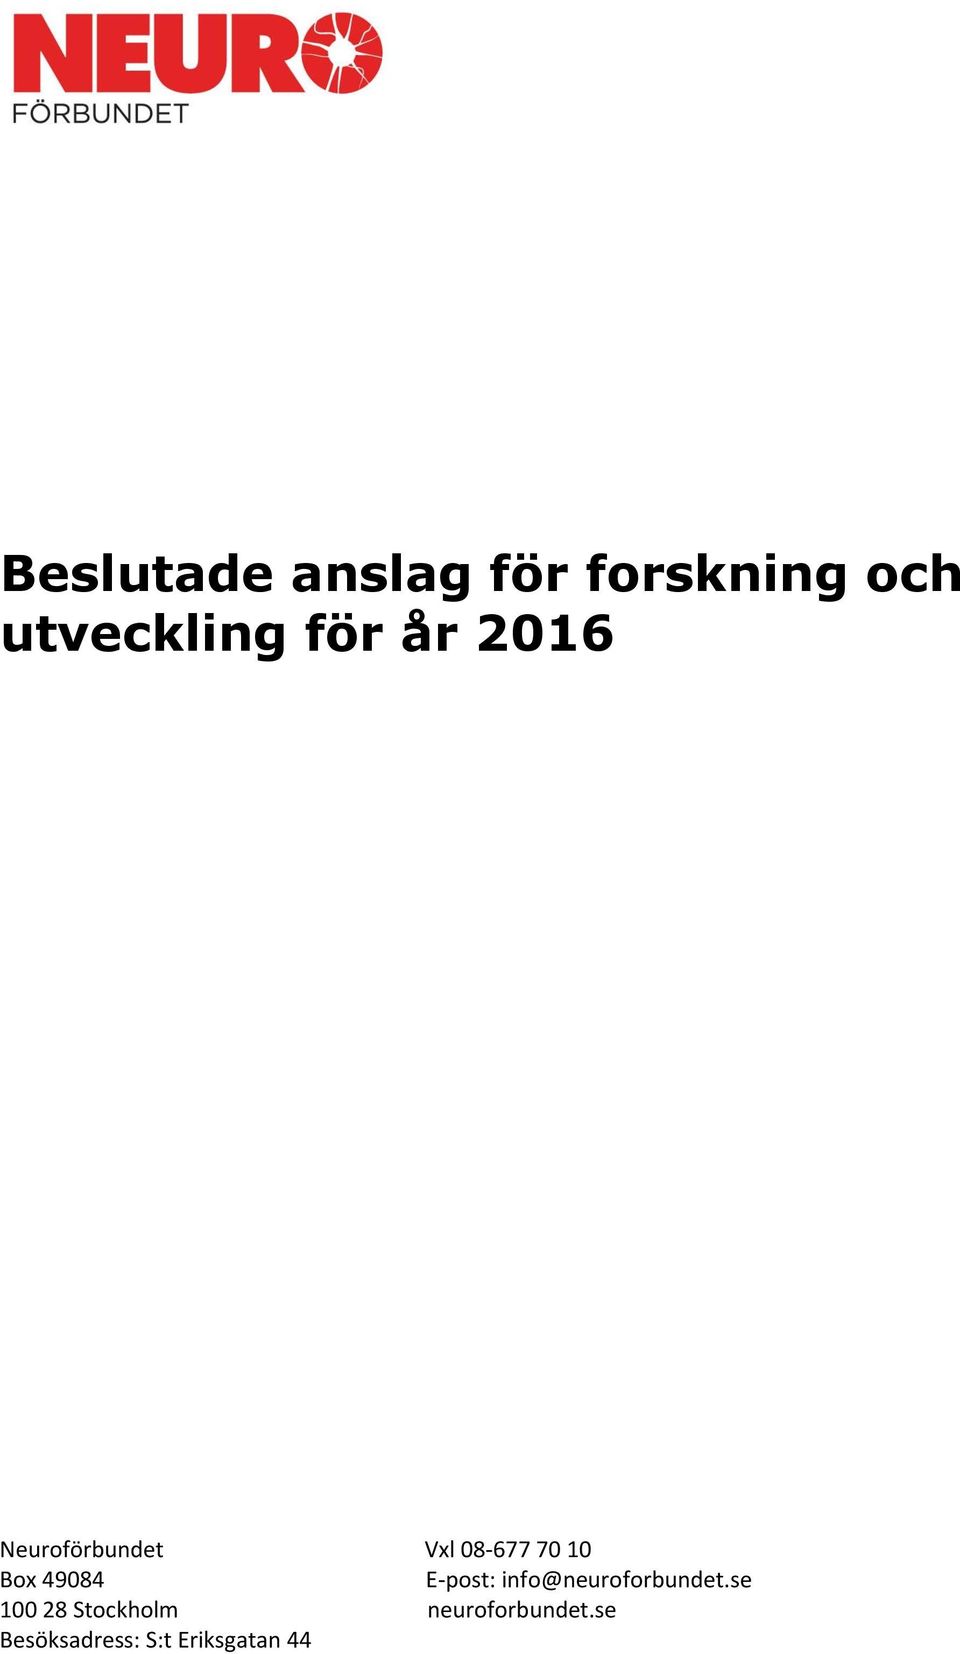 E-post: info@neuroforbundet.